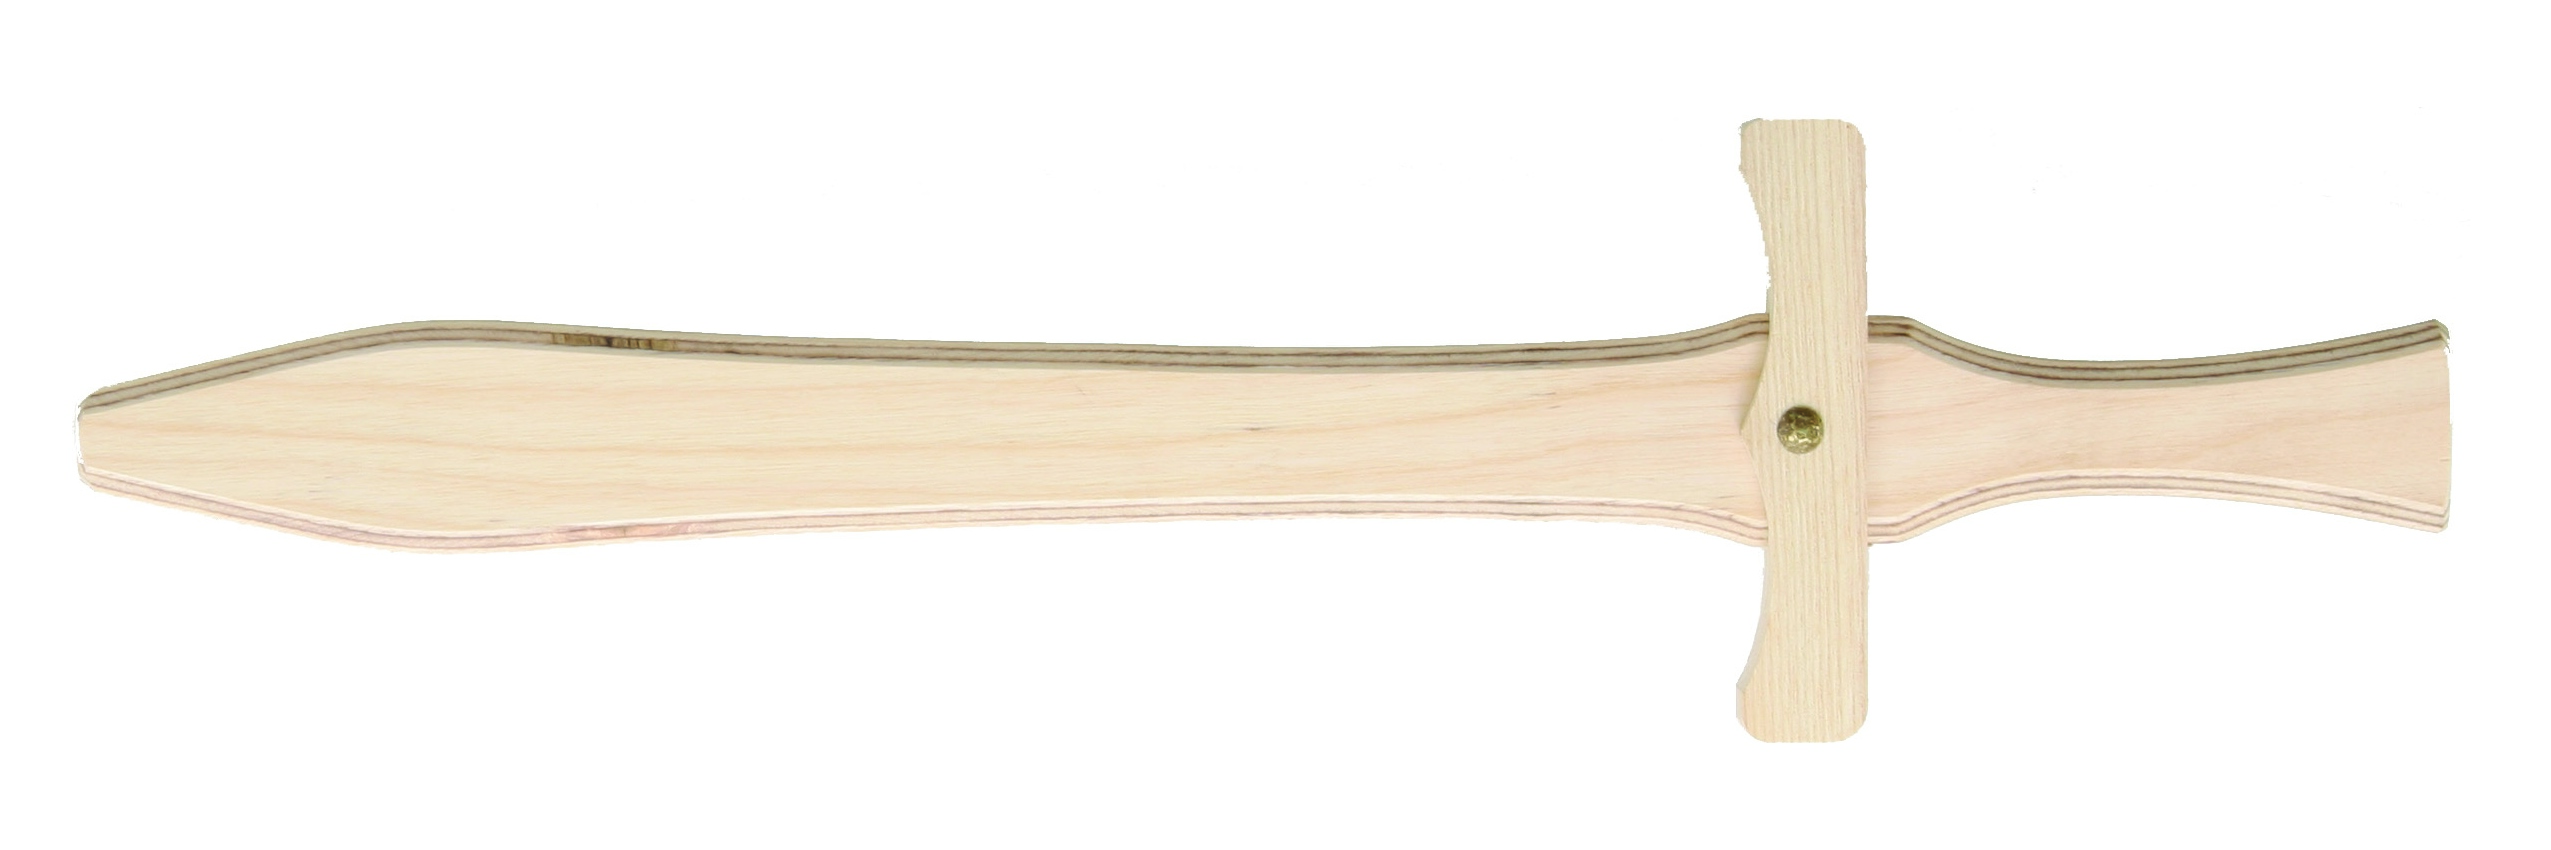 Spiel-Schwert, Kinderschwert aus Buchenholz, 49 cm